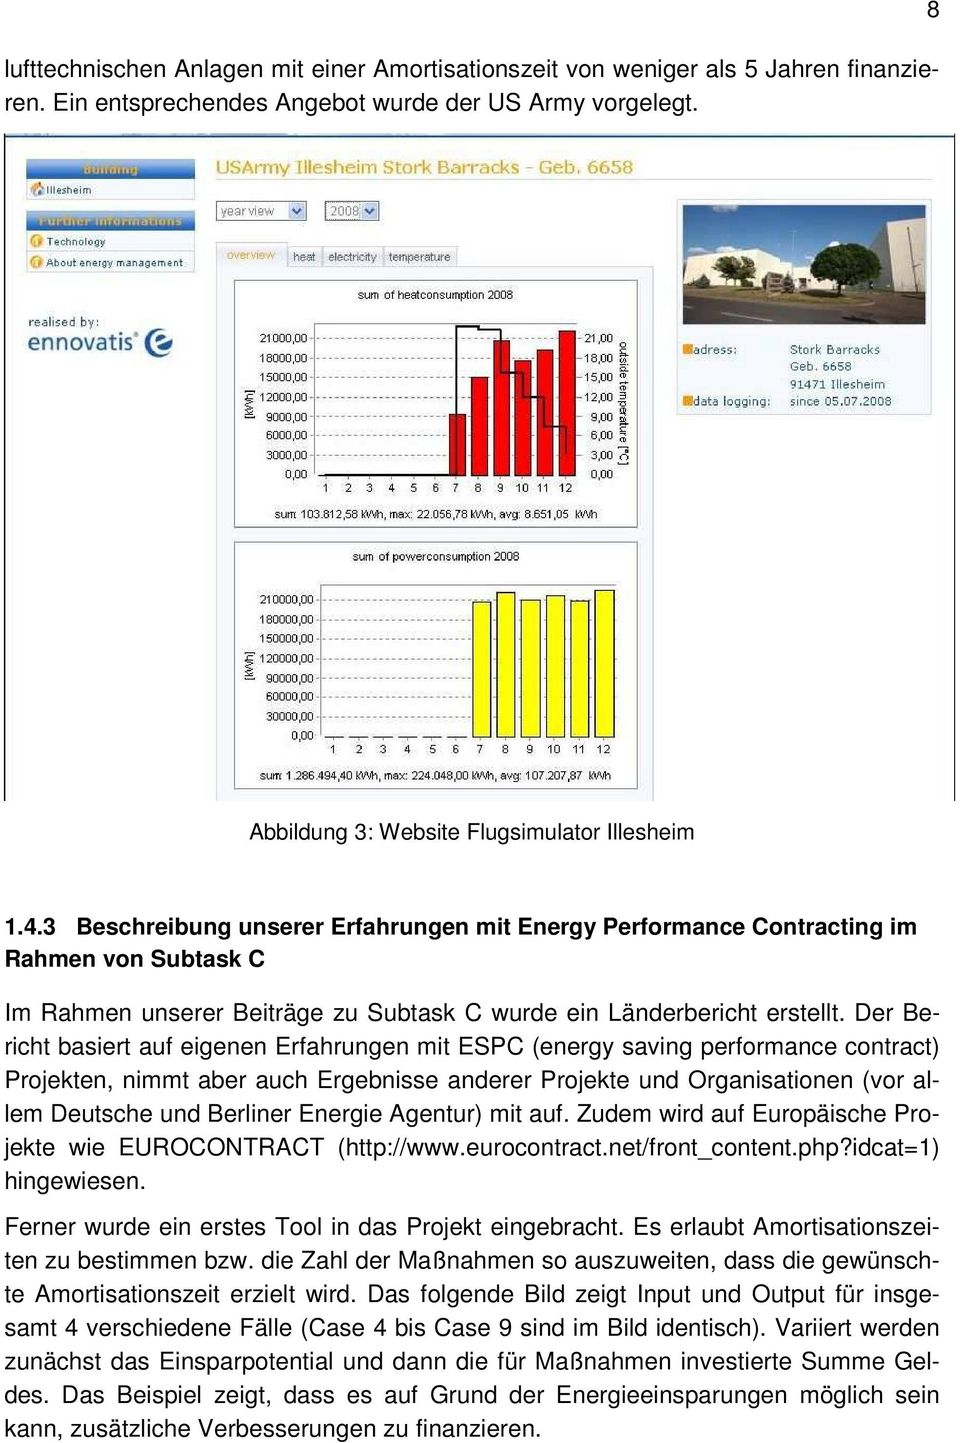 Der Bericht basiert auf eigenen Erfahrungen mit ESPC (energy saving performance contract) Projekten, nimmt aber auch Ergebnisse anderer Projekte und Organisationen (vor allem Deutsche und Berliner